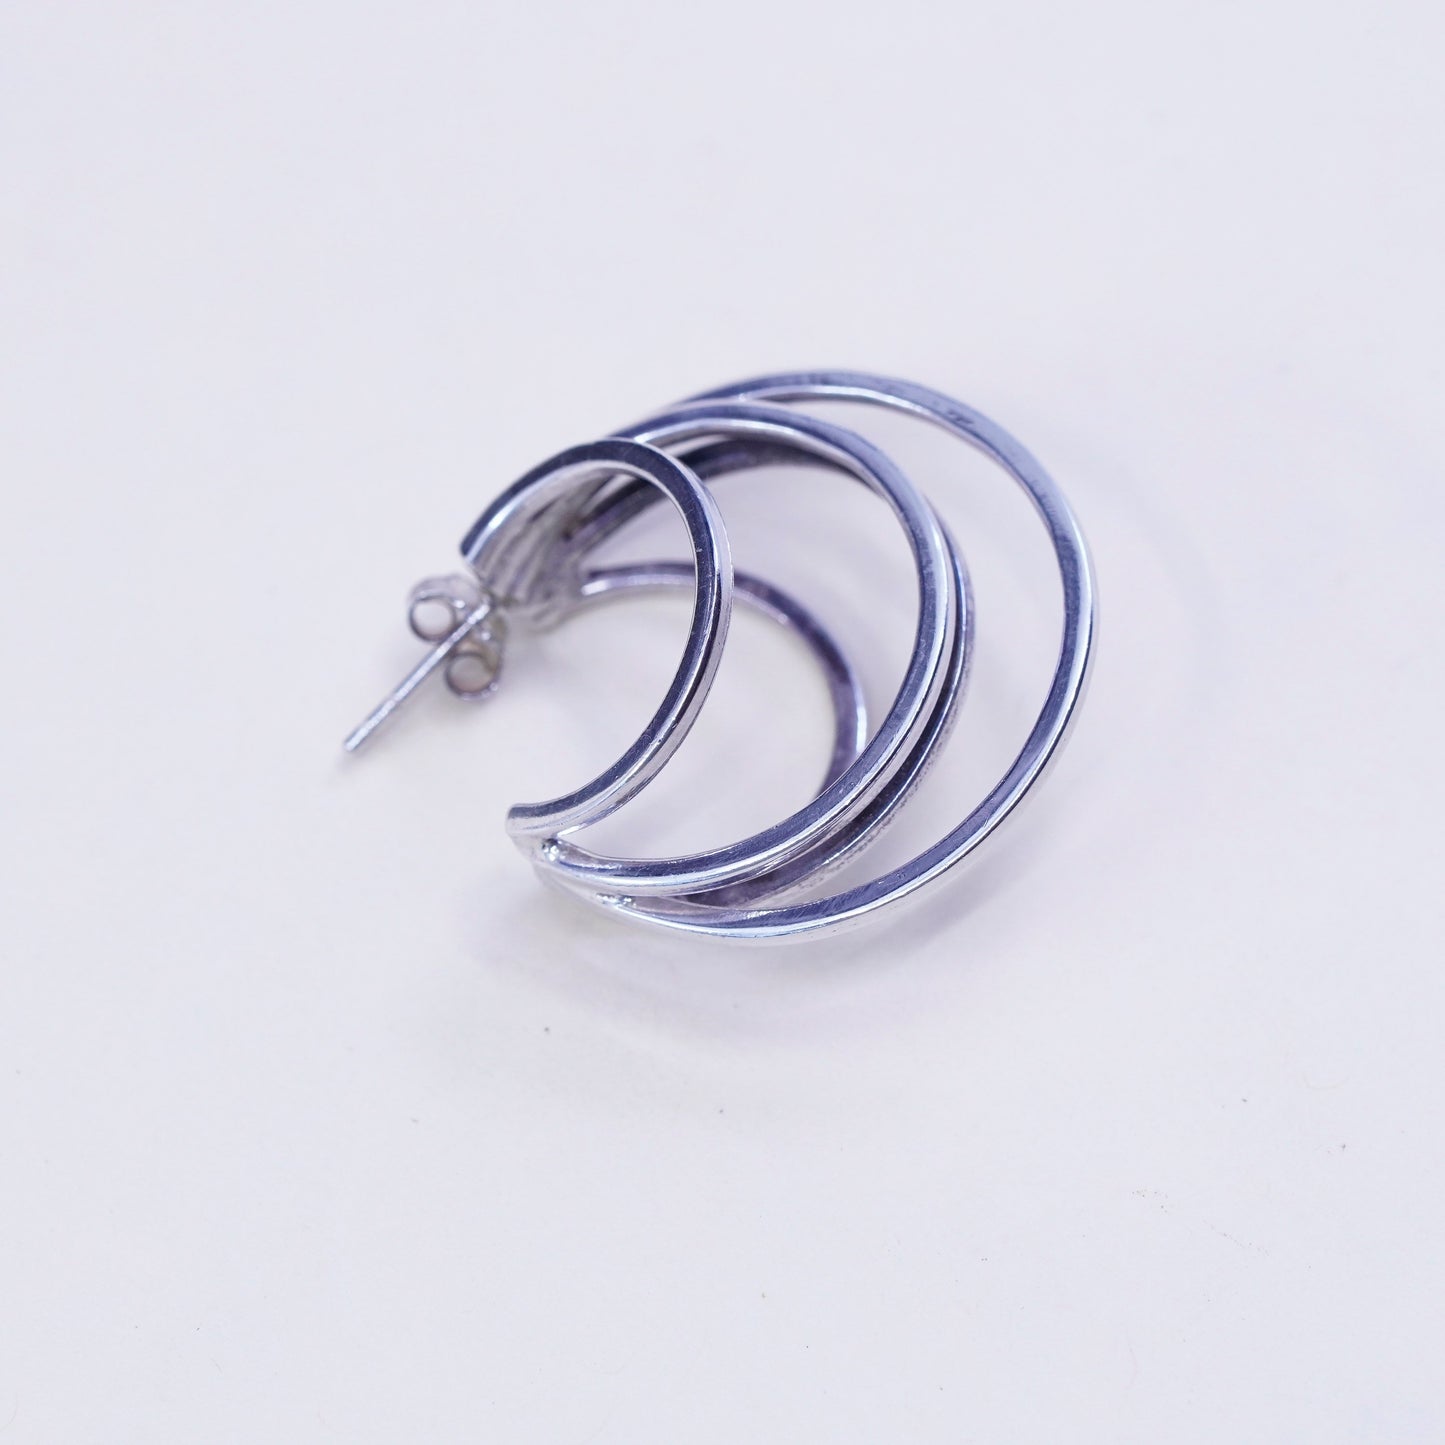 1.25”, Vintage Sterling silver handmade earrings, moon shaped 925 Huggie hoops